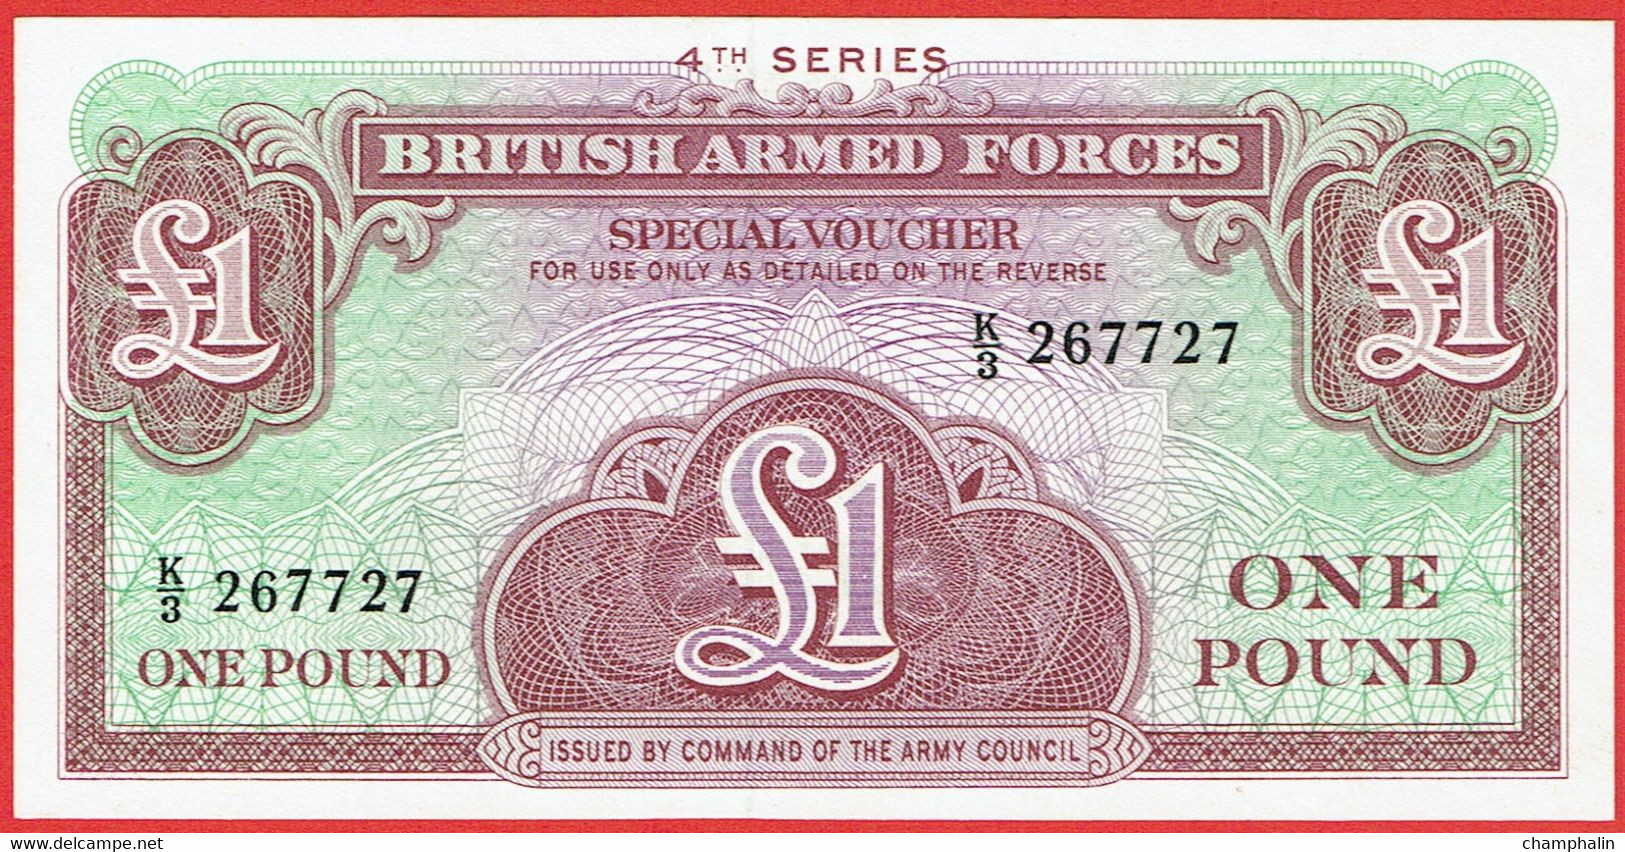 Grande-Bretagne - Billet De 1 Pound - British Armed Forces - 4th Series - Non Daté (1962) - M36a - Neuf - British Armed Forces & Special Vouchers